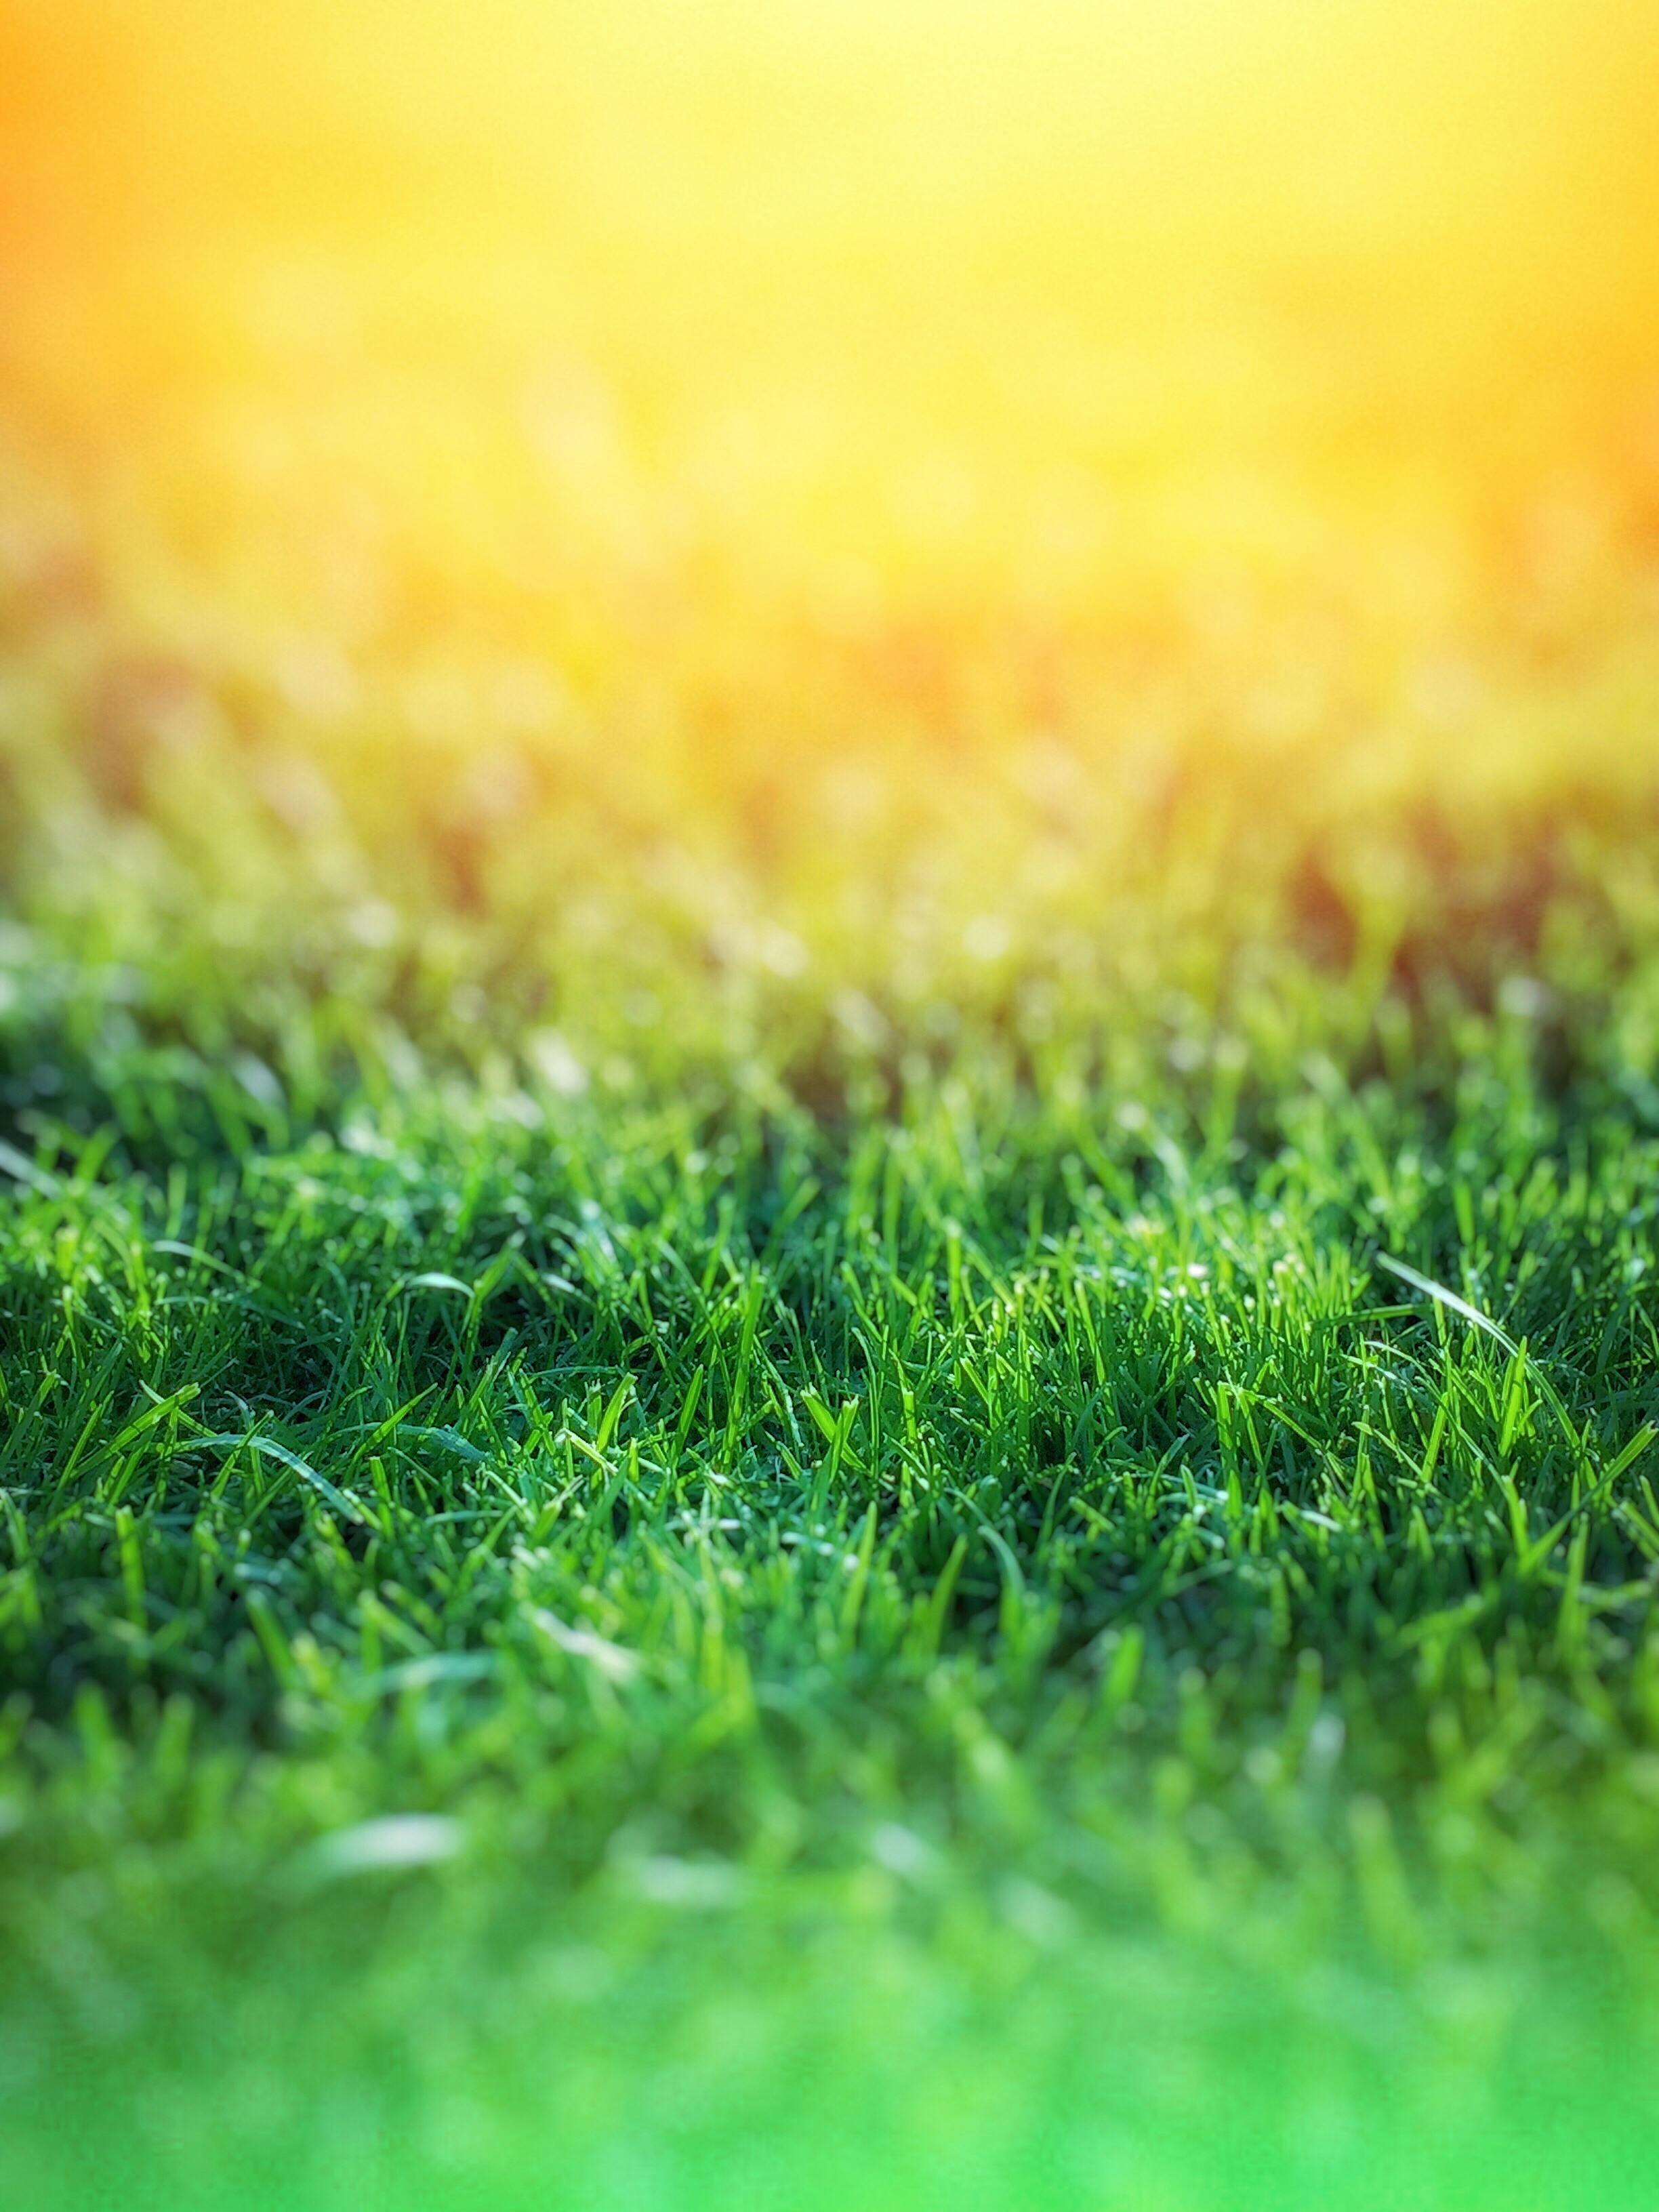 Hãy khám phá vẻ đẹp tự nhiên của phông nền cỏ xanh trong hình ảnh này. Bạn sẽ không thể rời mắt khỏi nó đâu!